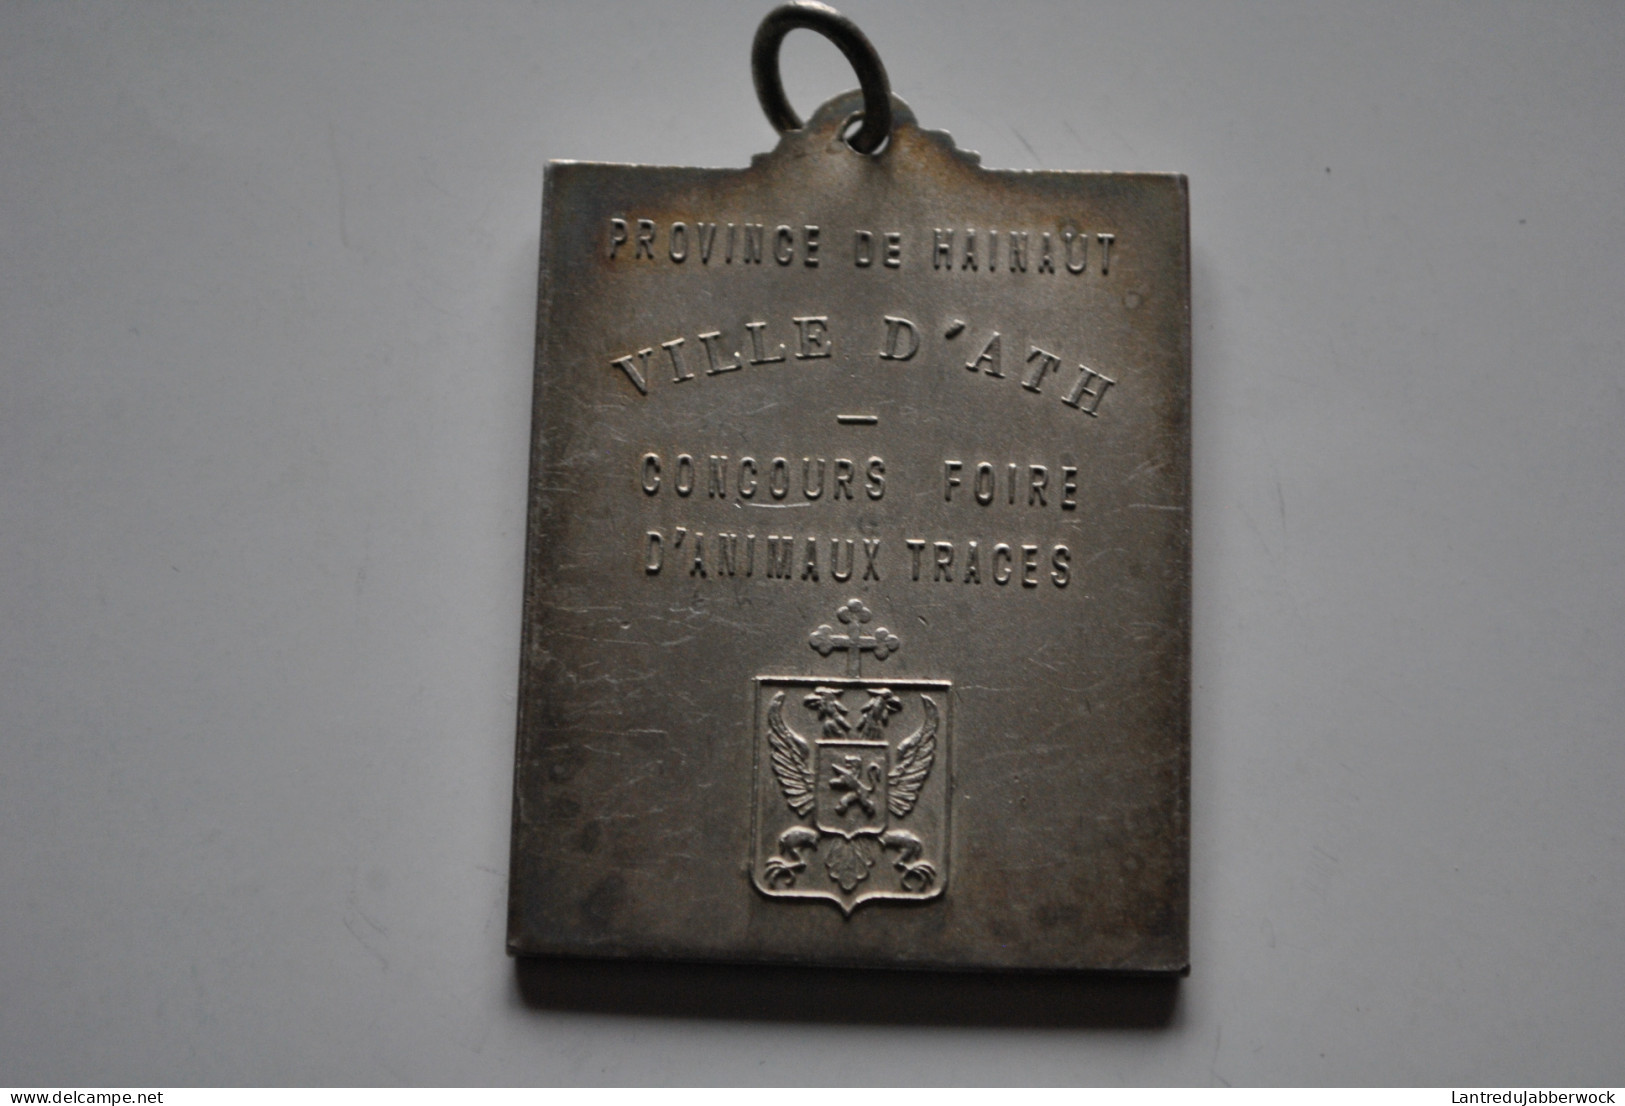 Médaille En Métal Argenté Ville D'Ath Concours Foire D'animaux Traces Armes Armoiries De La (45 X 60 Mm) Beffroi - Gemeentepenningen